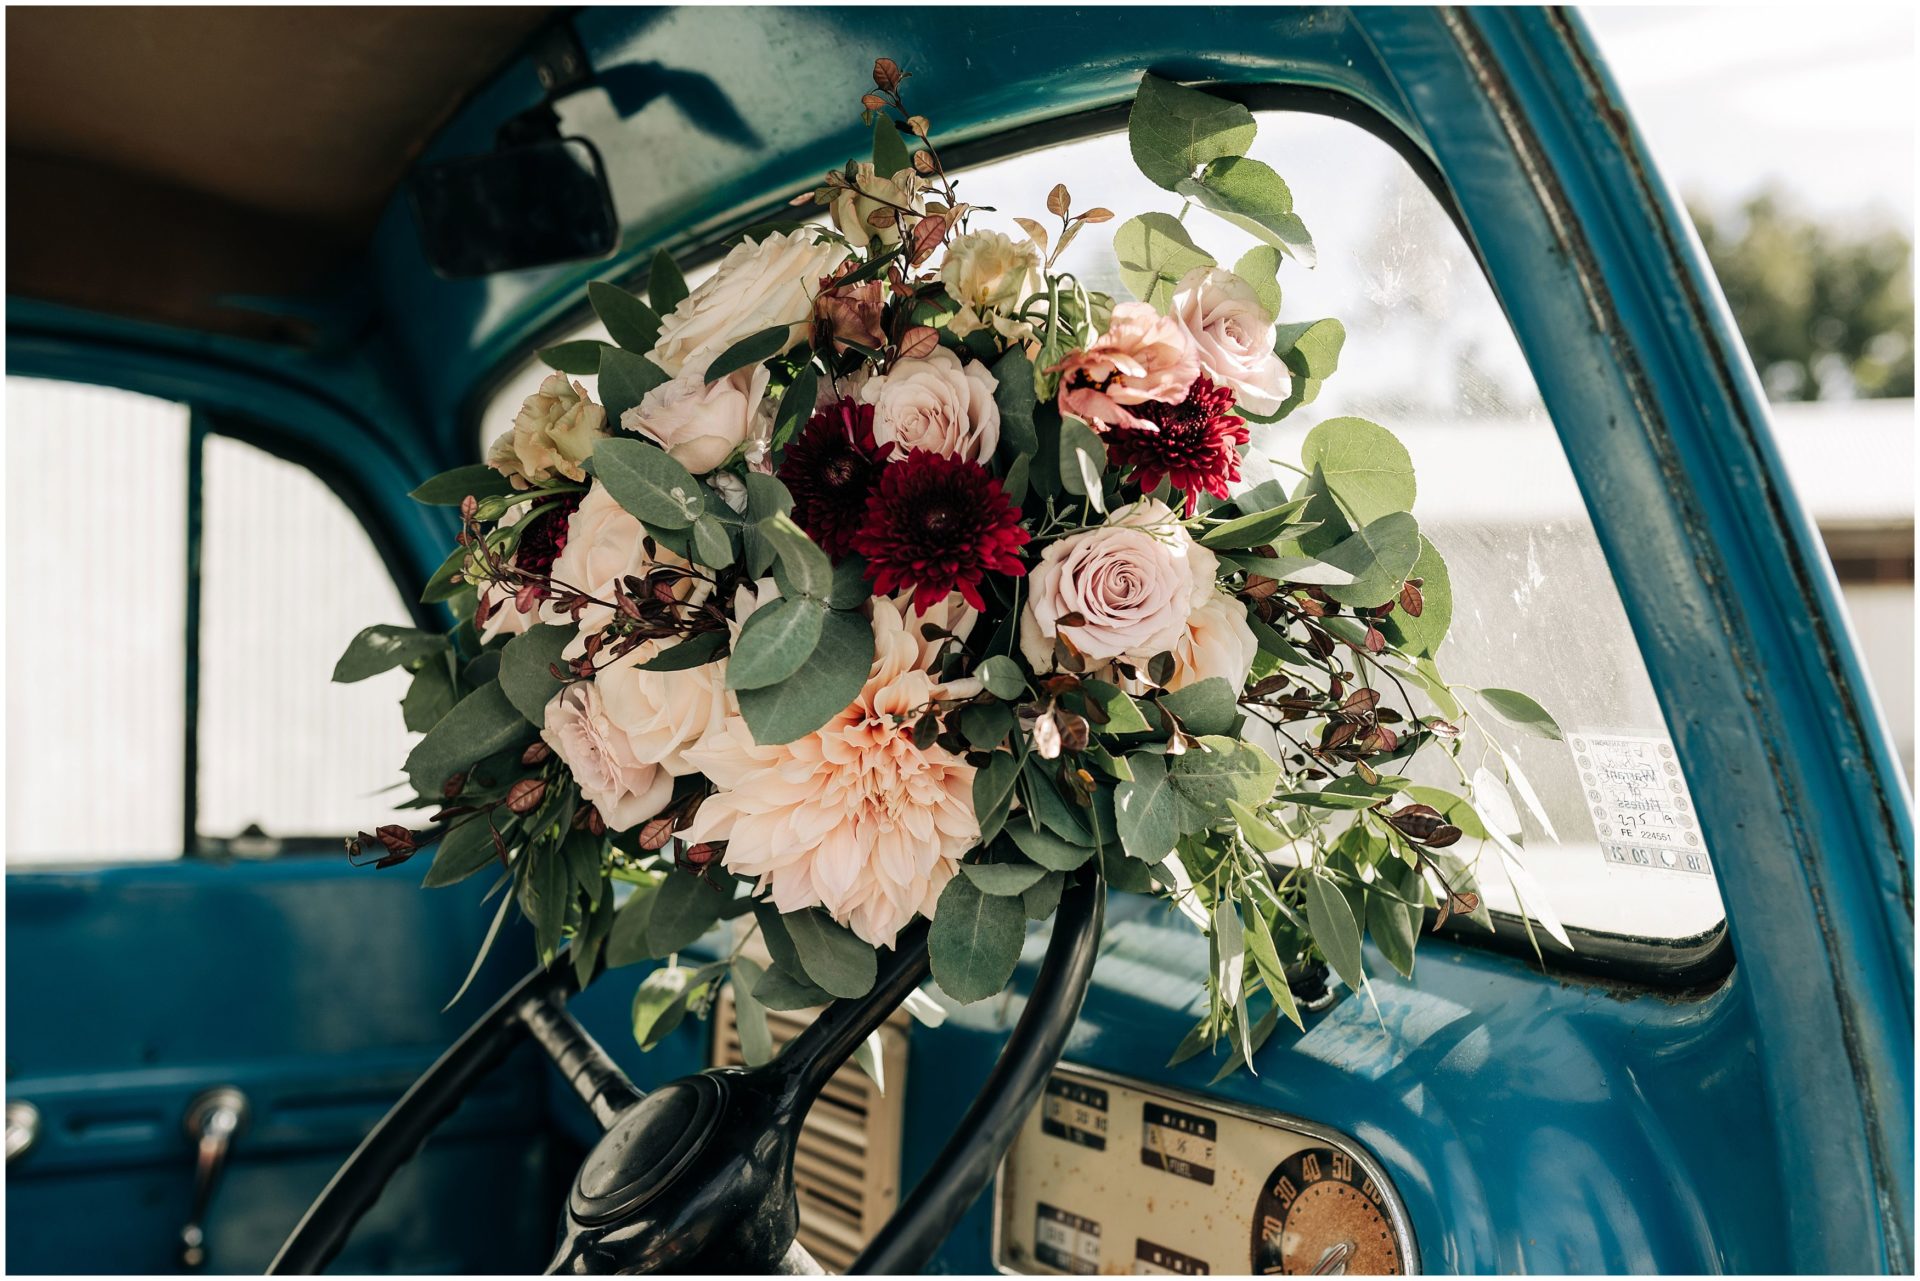 Wedding-photographer-christchurch-bouquet-dahlia-truck-old